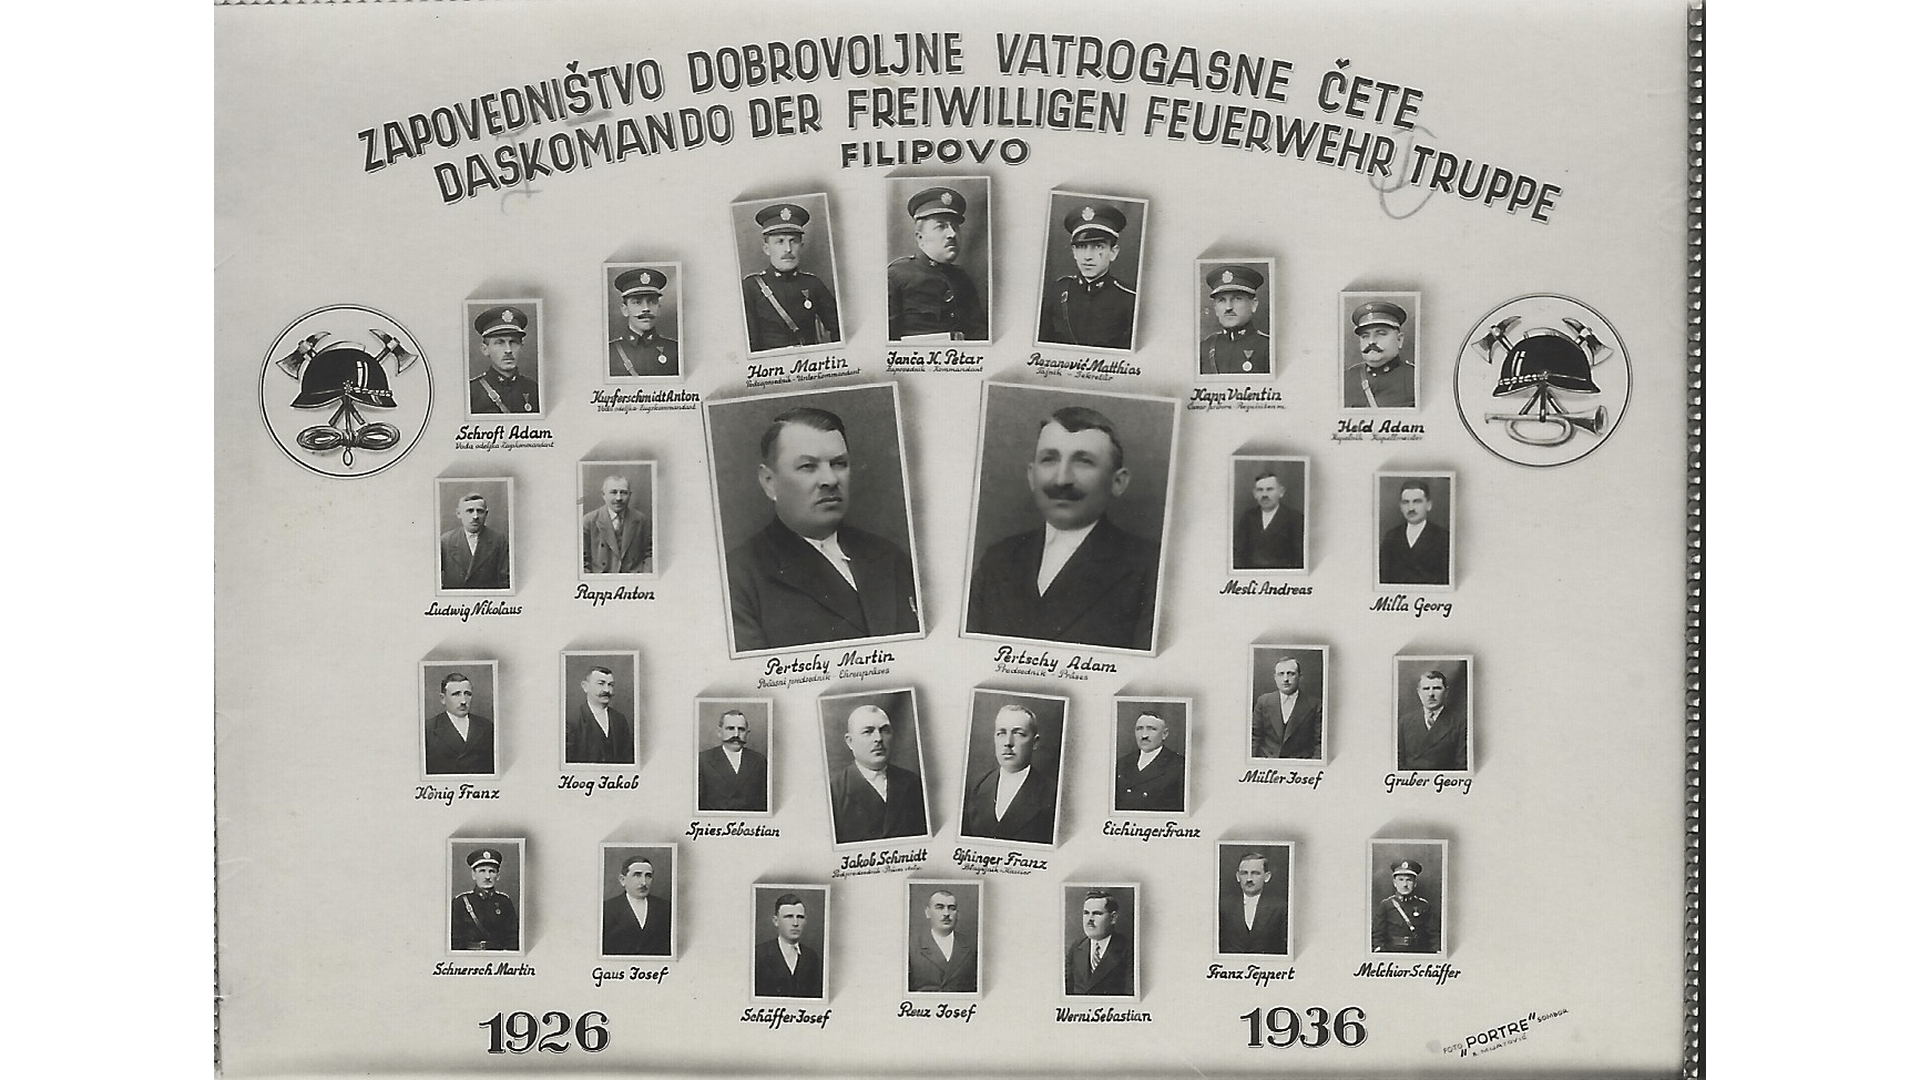 Freiwillige Feuerwehr 1926 - 1936. Foto: Archiv Freundeskreis Filipowa